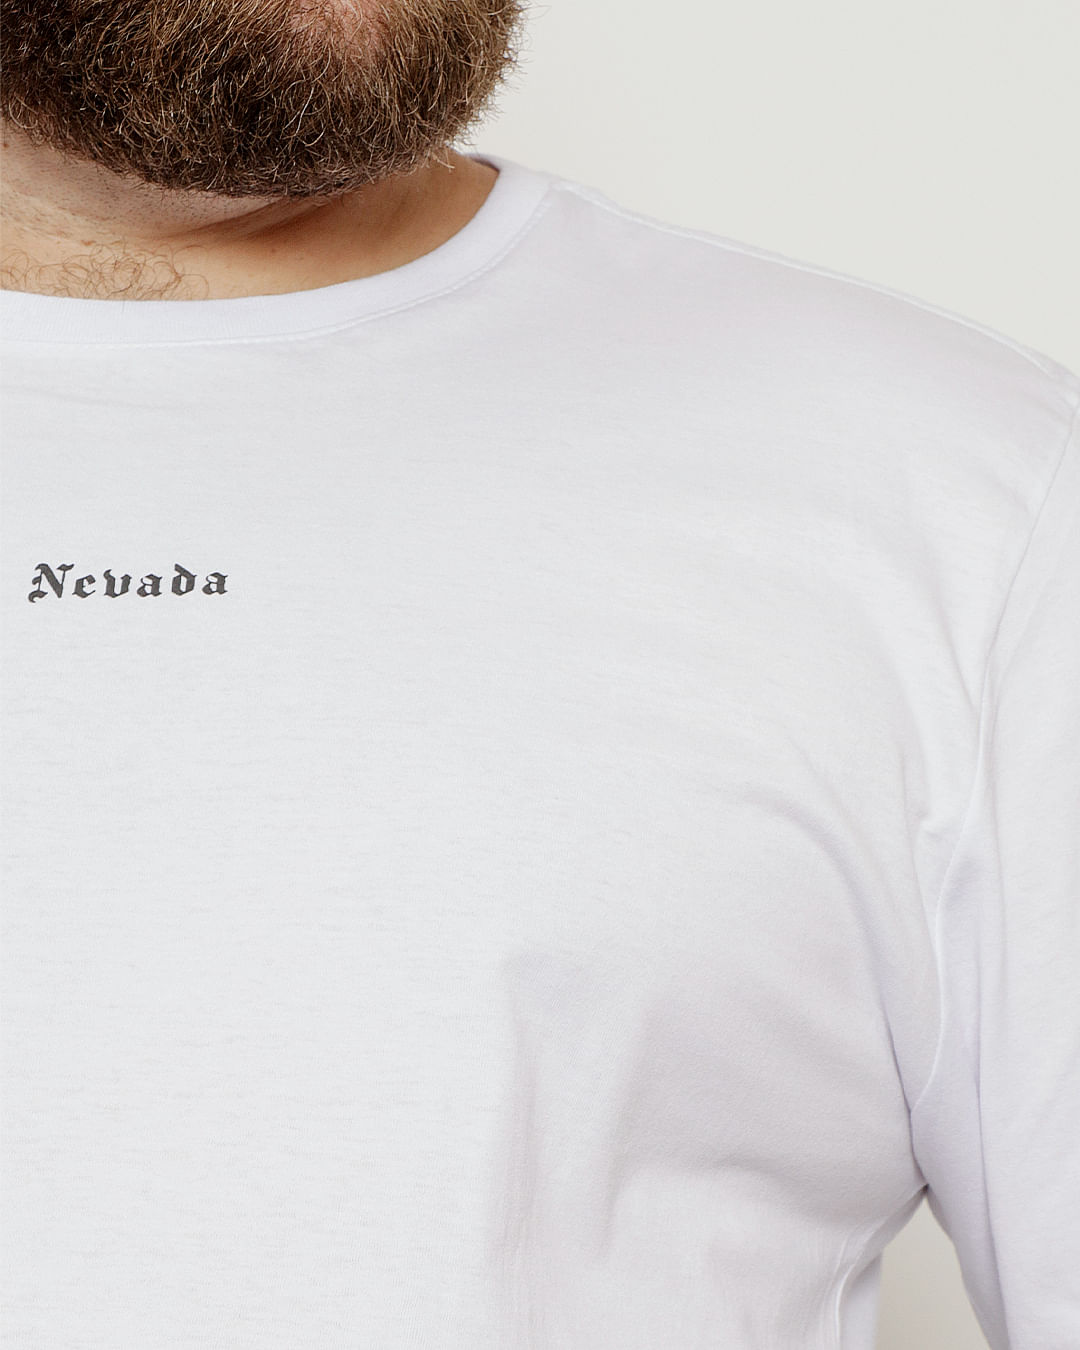 Camiseta-E3105-Sierra-Nev-Bco-Plus---Branco